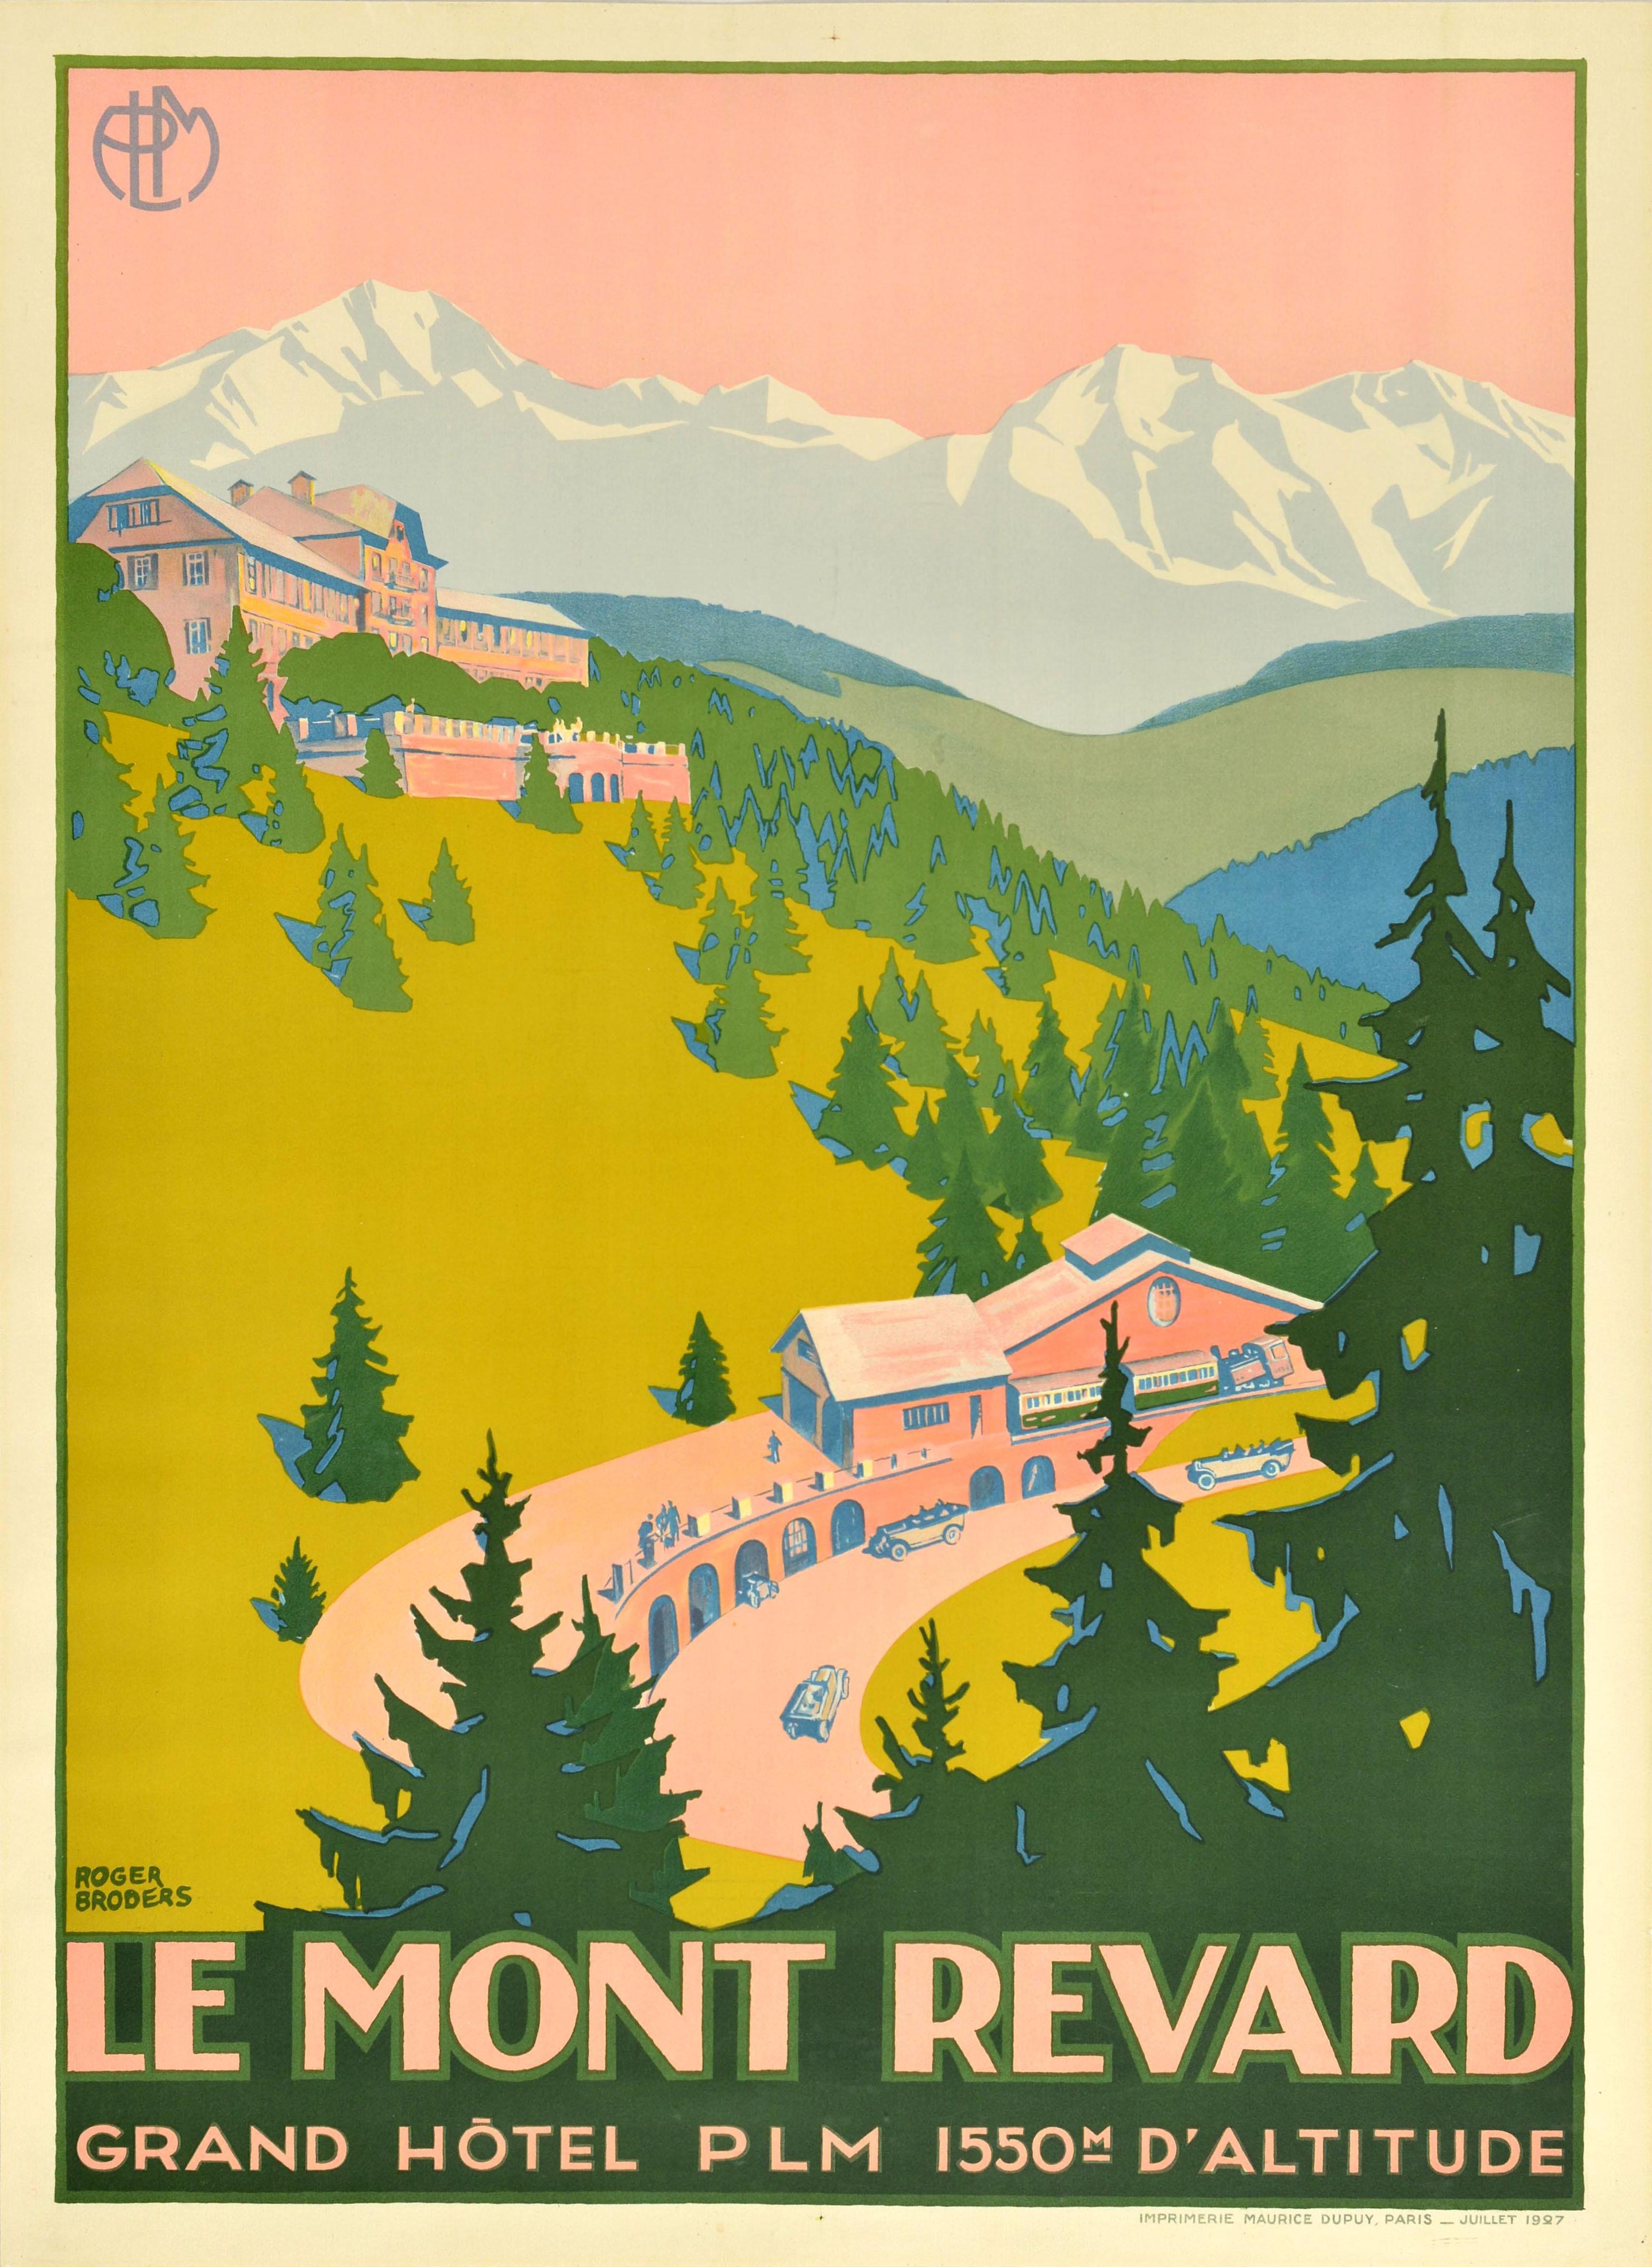 Originales Vintage-Reiseplakat für das Le Mont Revard Grand Hotel PLM 1550m d'Altitude, herausgegeben von der PLM Paris Lyon Mediterranee Eisenbahn, mit einem atemberaubenden Design des bekannten französischen Künstlers Roger Broders (1883-1953),